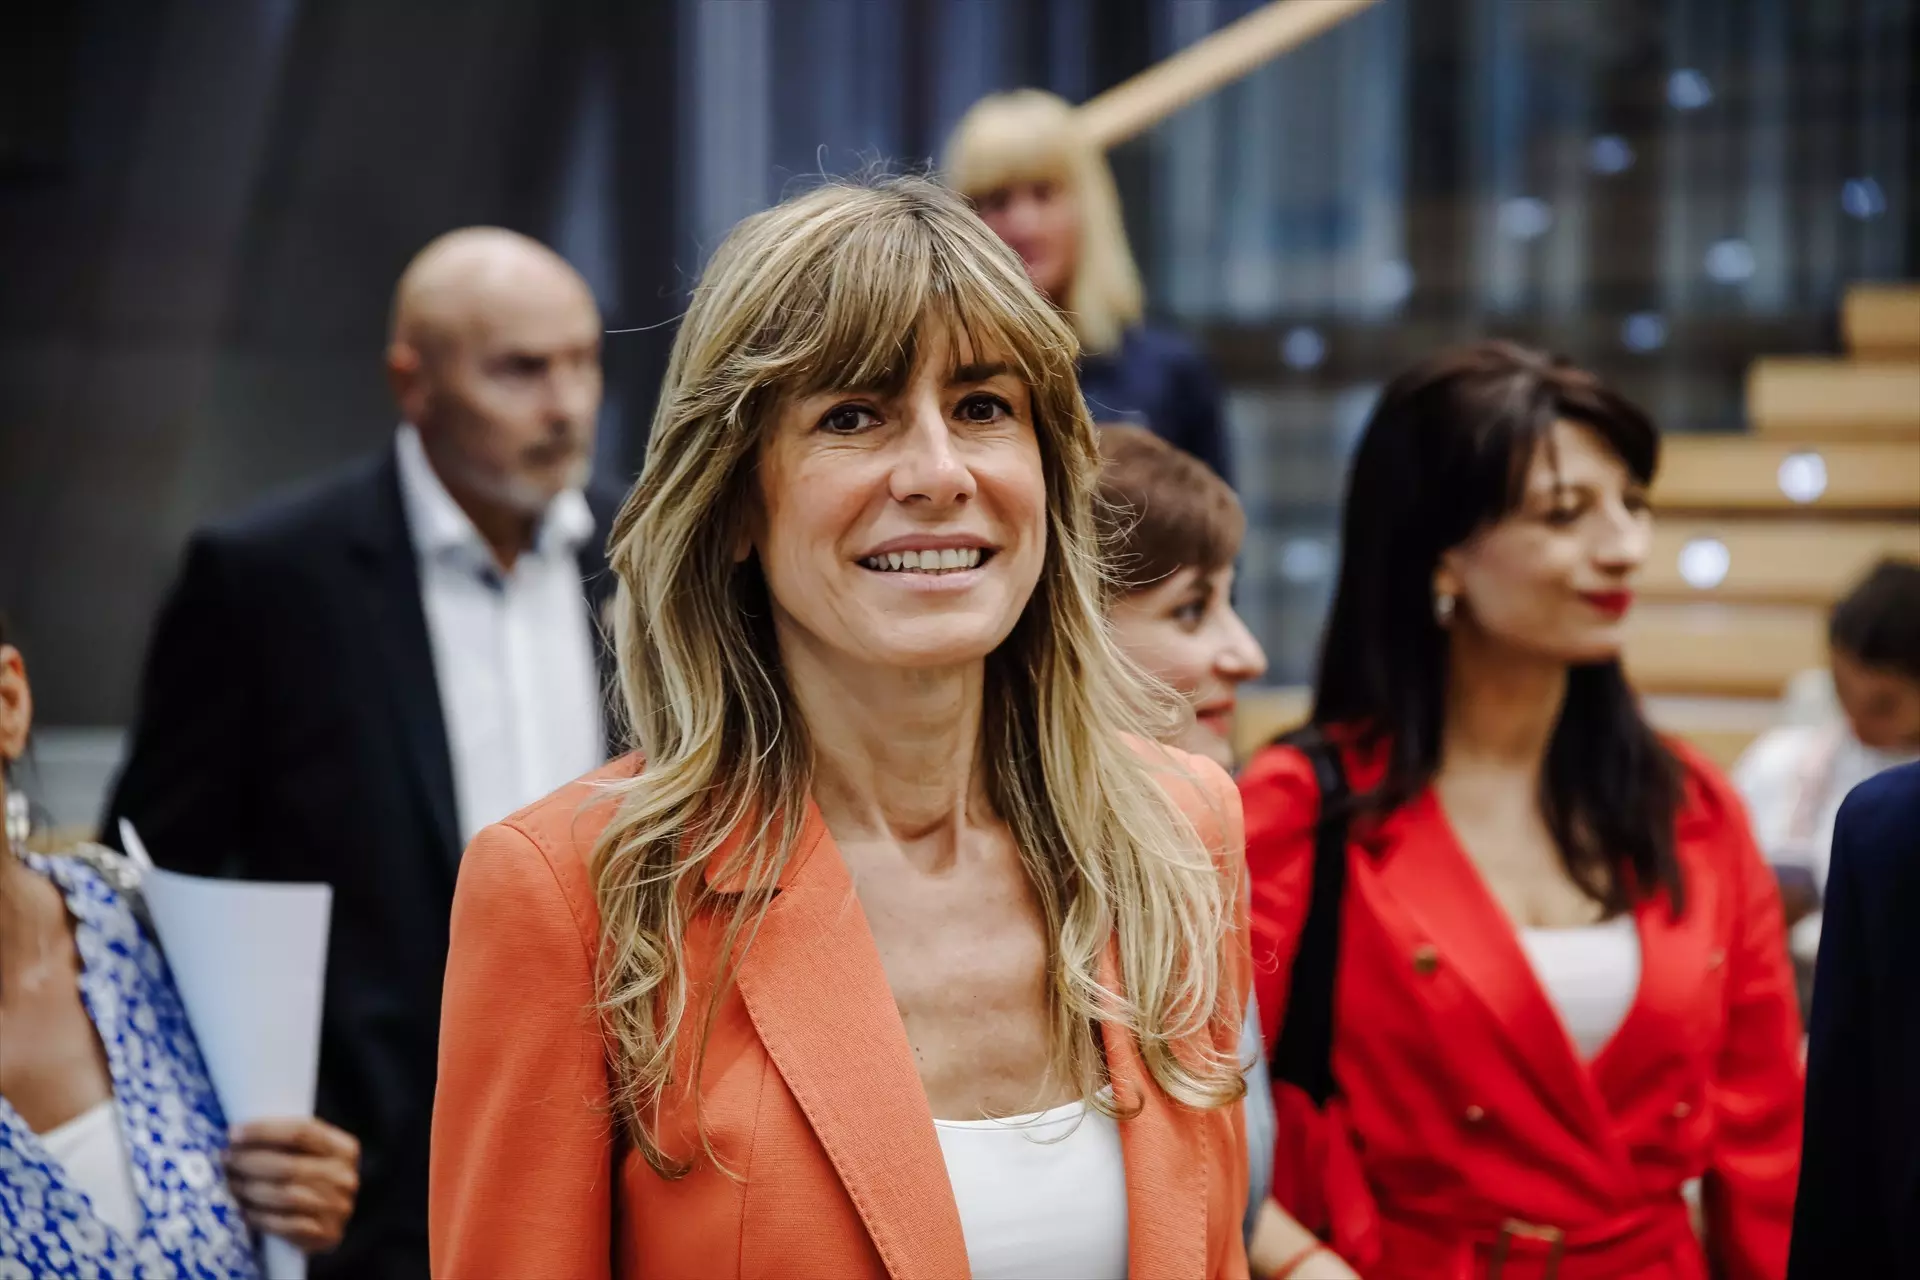 La esposa del presidente del Gobierno, Pedro Sánchez, Begoña Gómez, durante un acto en Madrid, a 15 de junio de 2022. — Carlos Luján / Europa Press